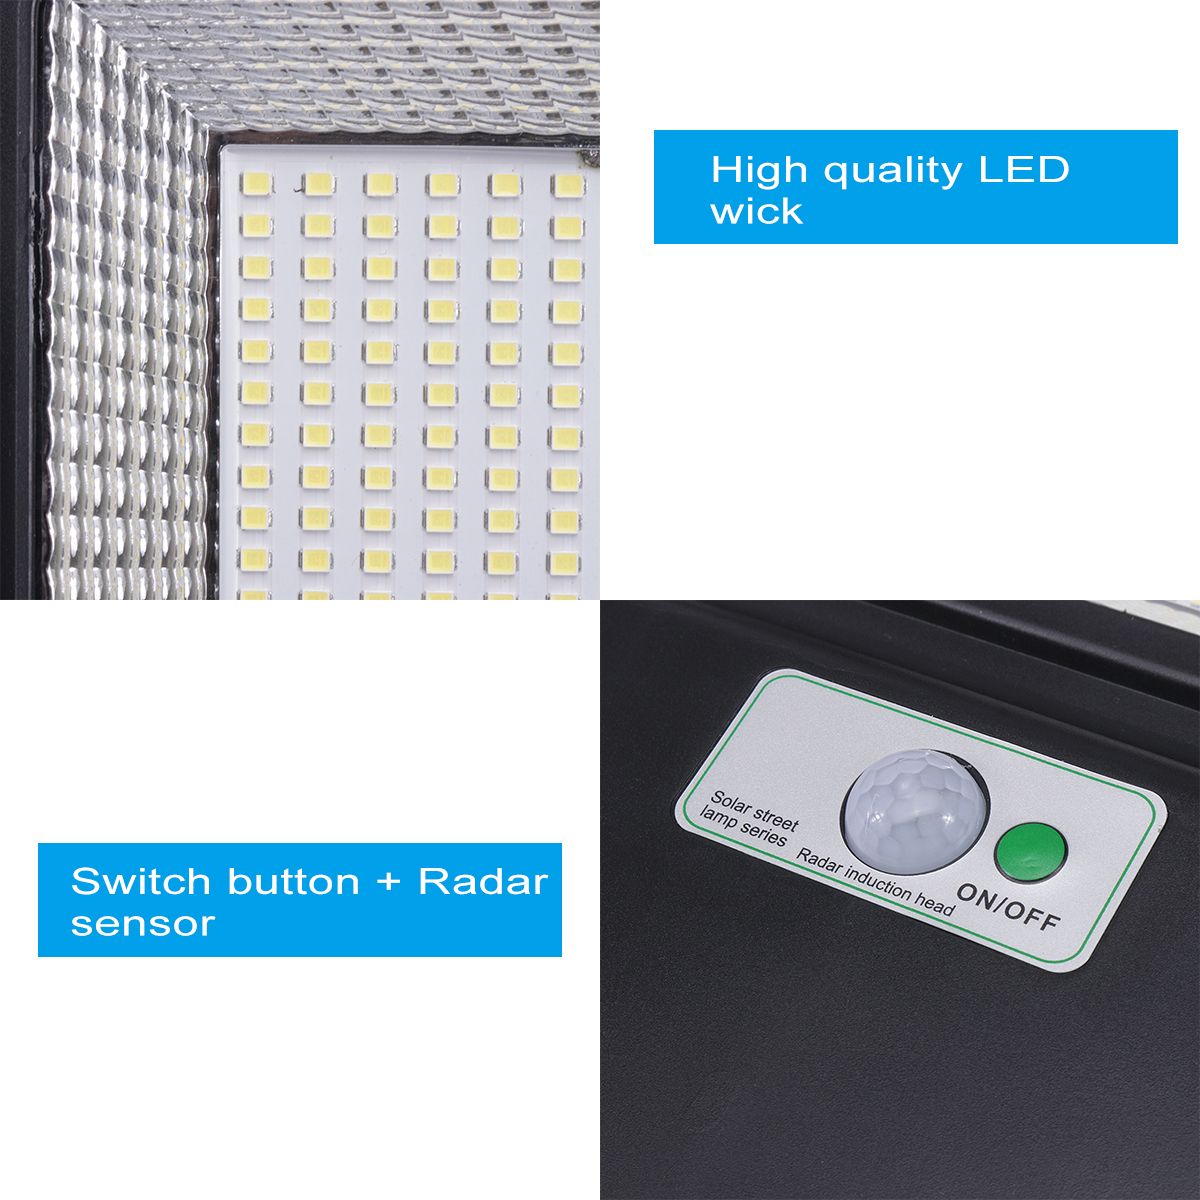 936-LED-Solar-Street-Light-PIR-Motion-Sensor-Lamp-Wall-Garden-1618944